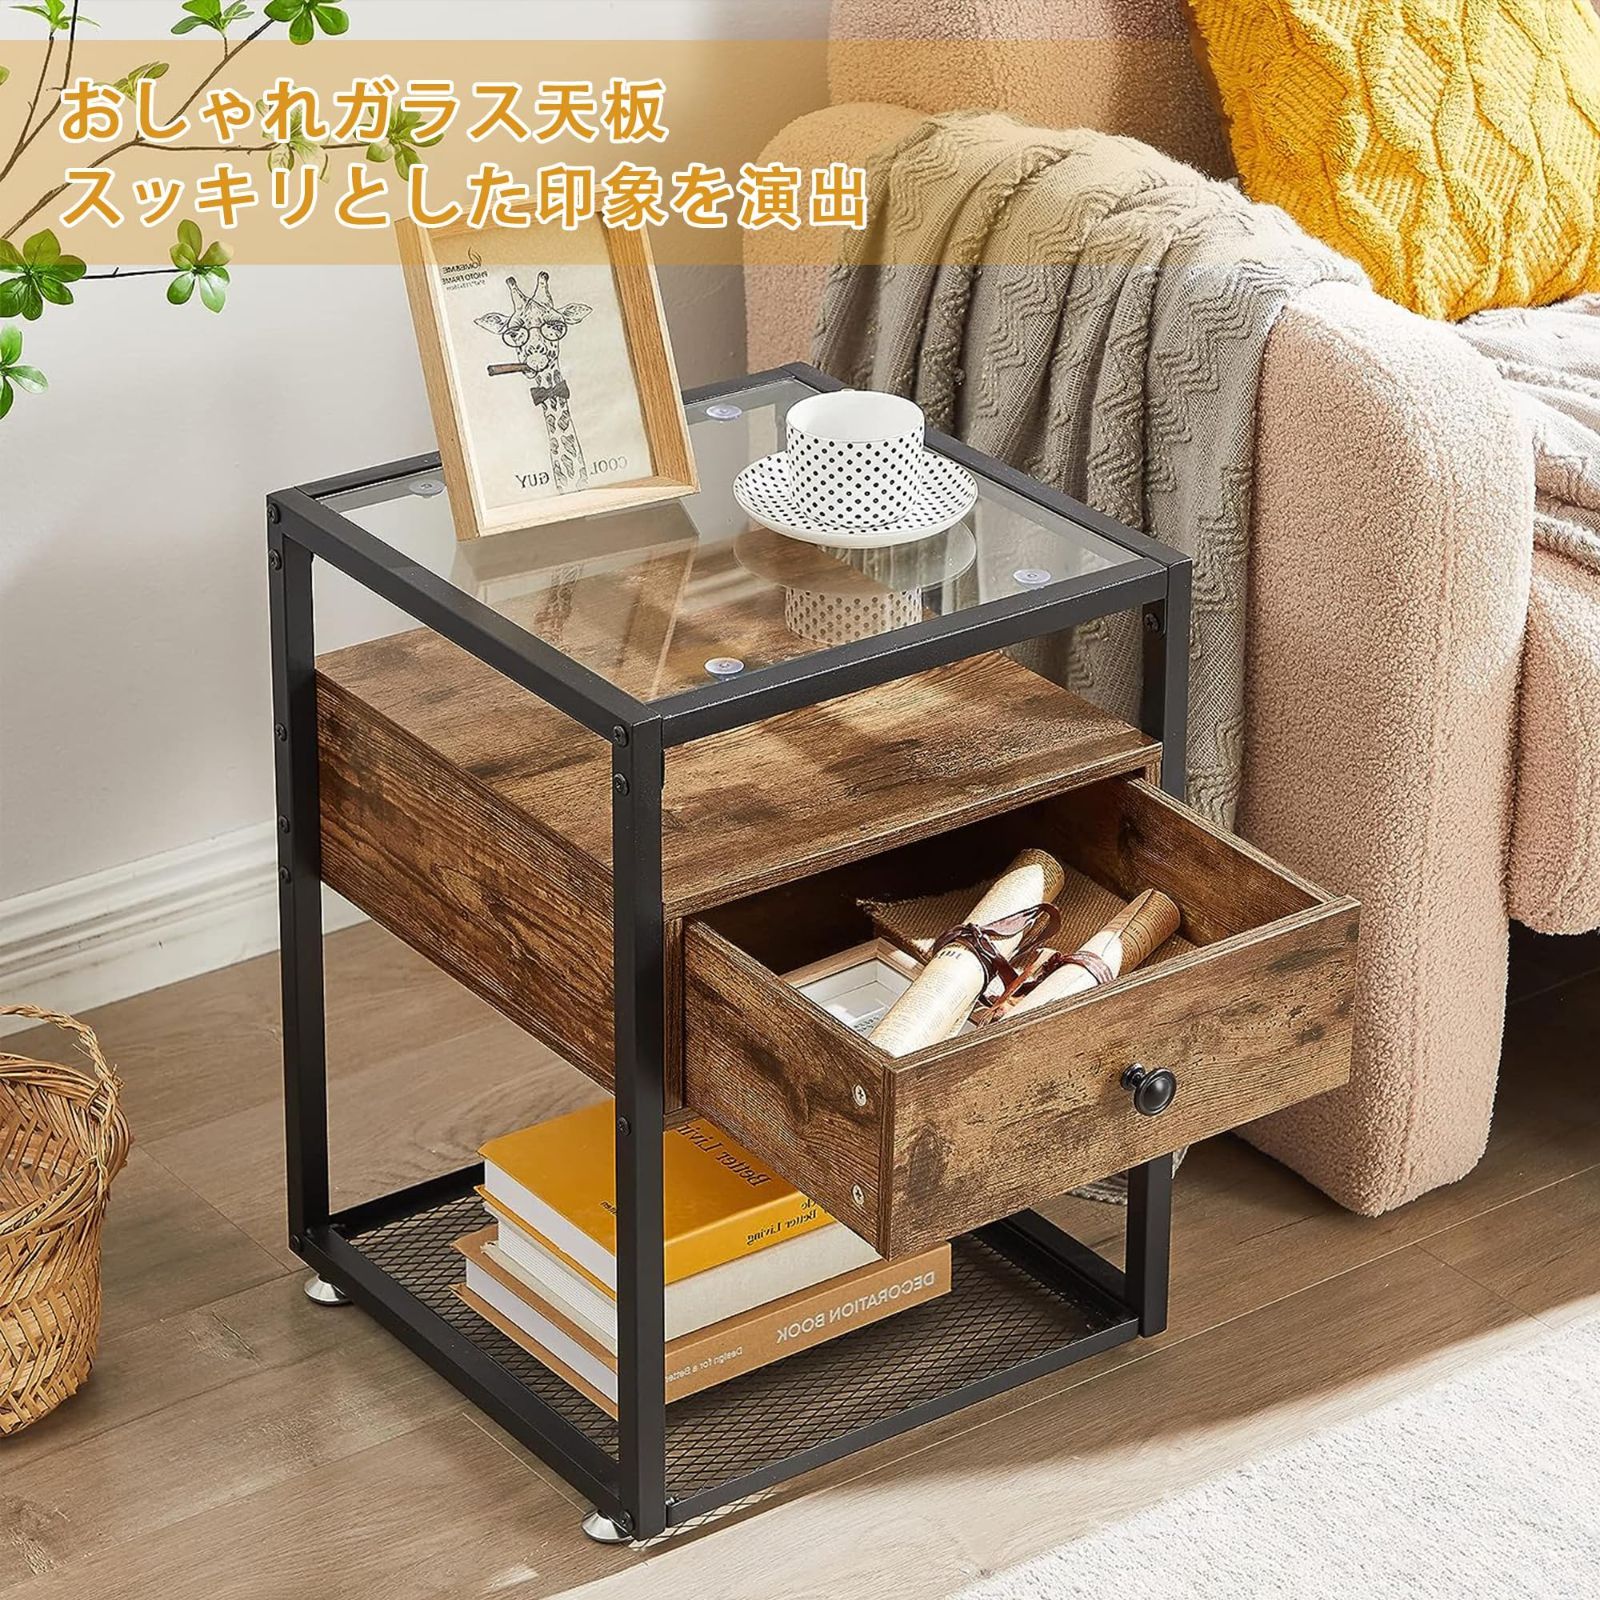 サイドテーブル ベッドサイド 丸 耐荷重10kg 高さ調整可能 小型家具 ミニテ